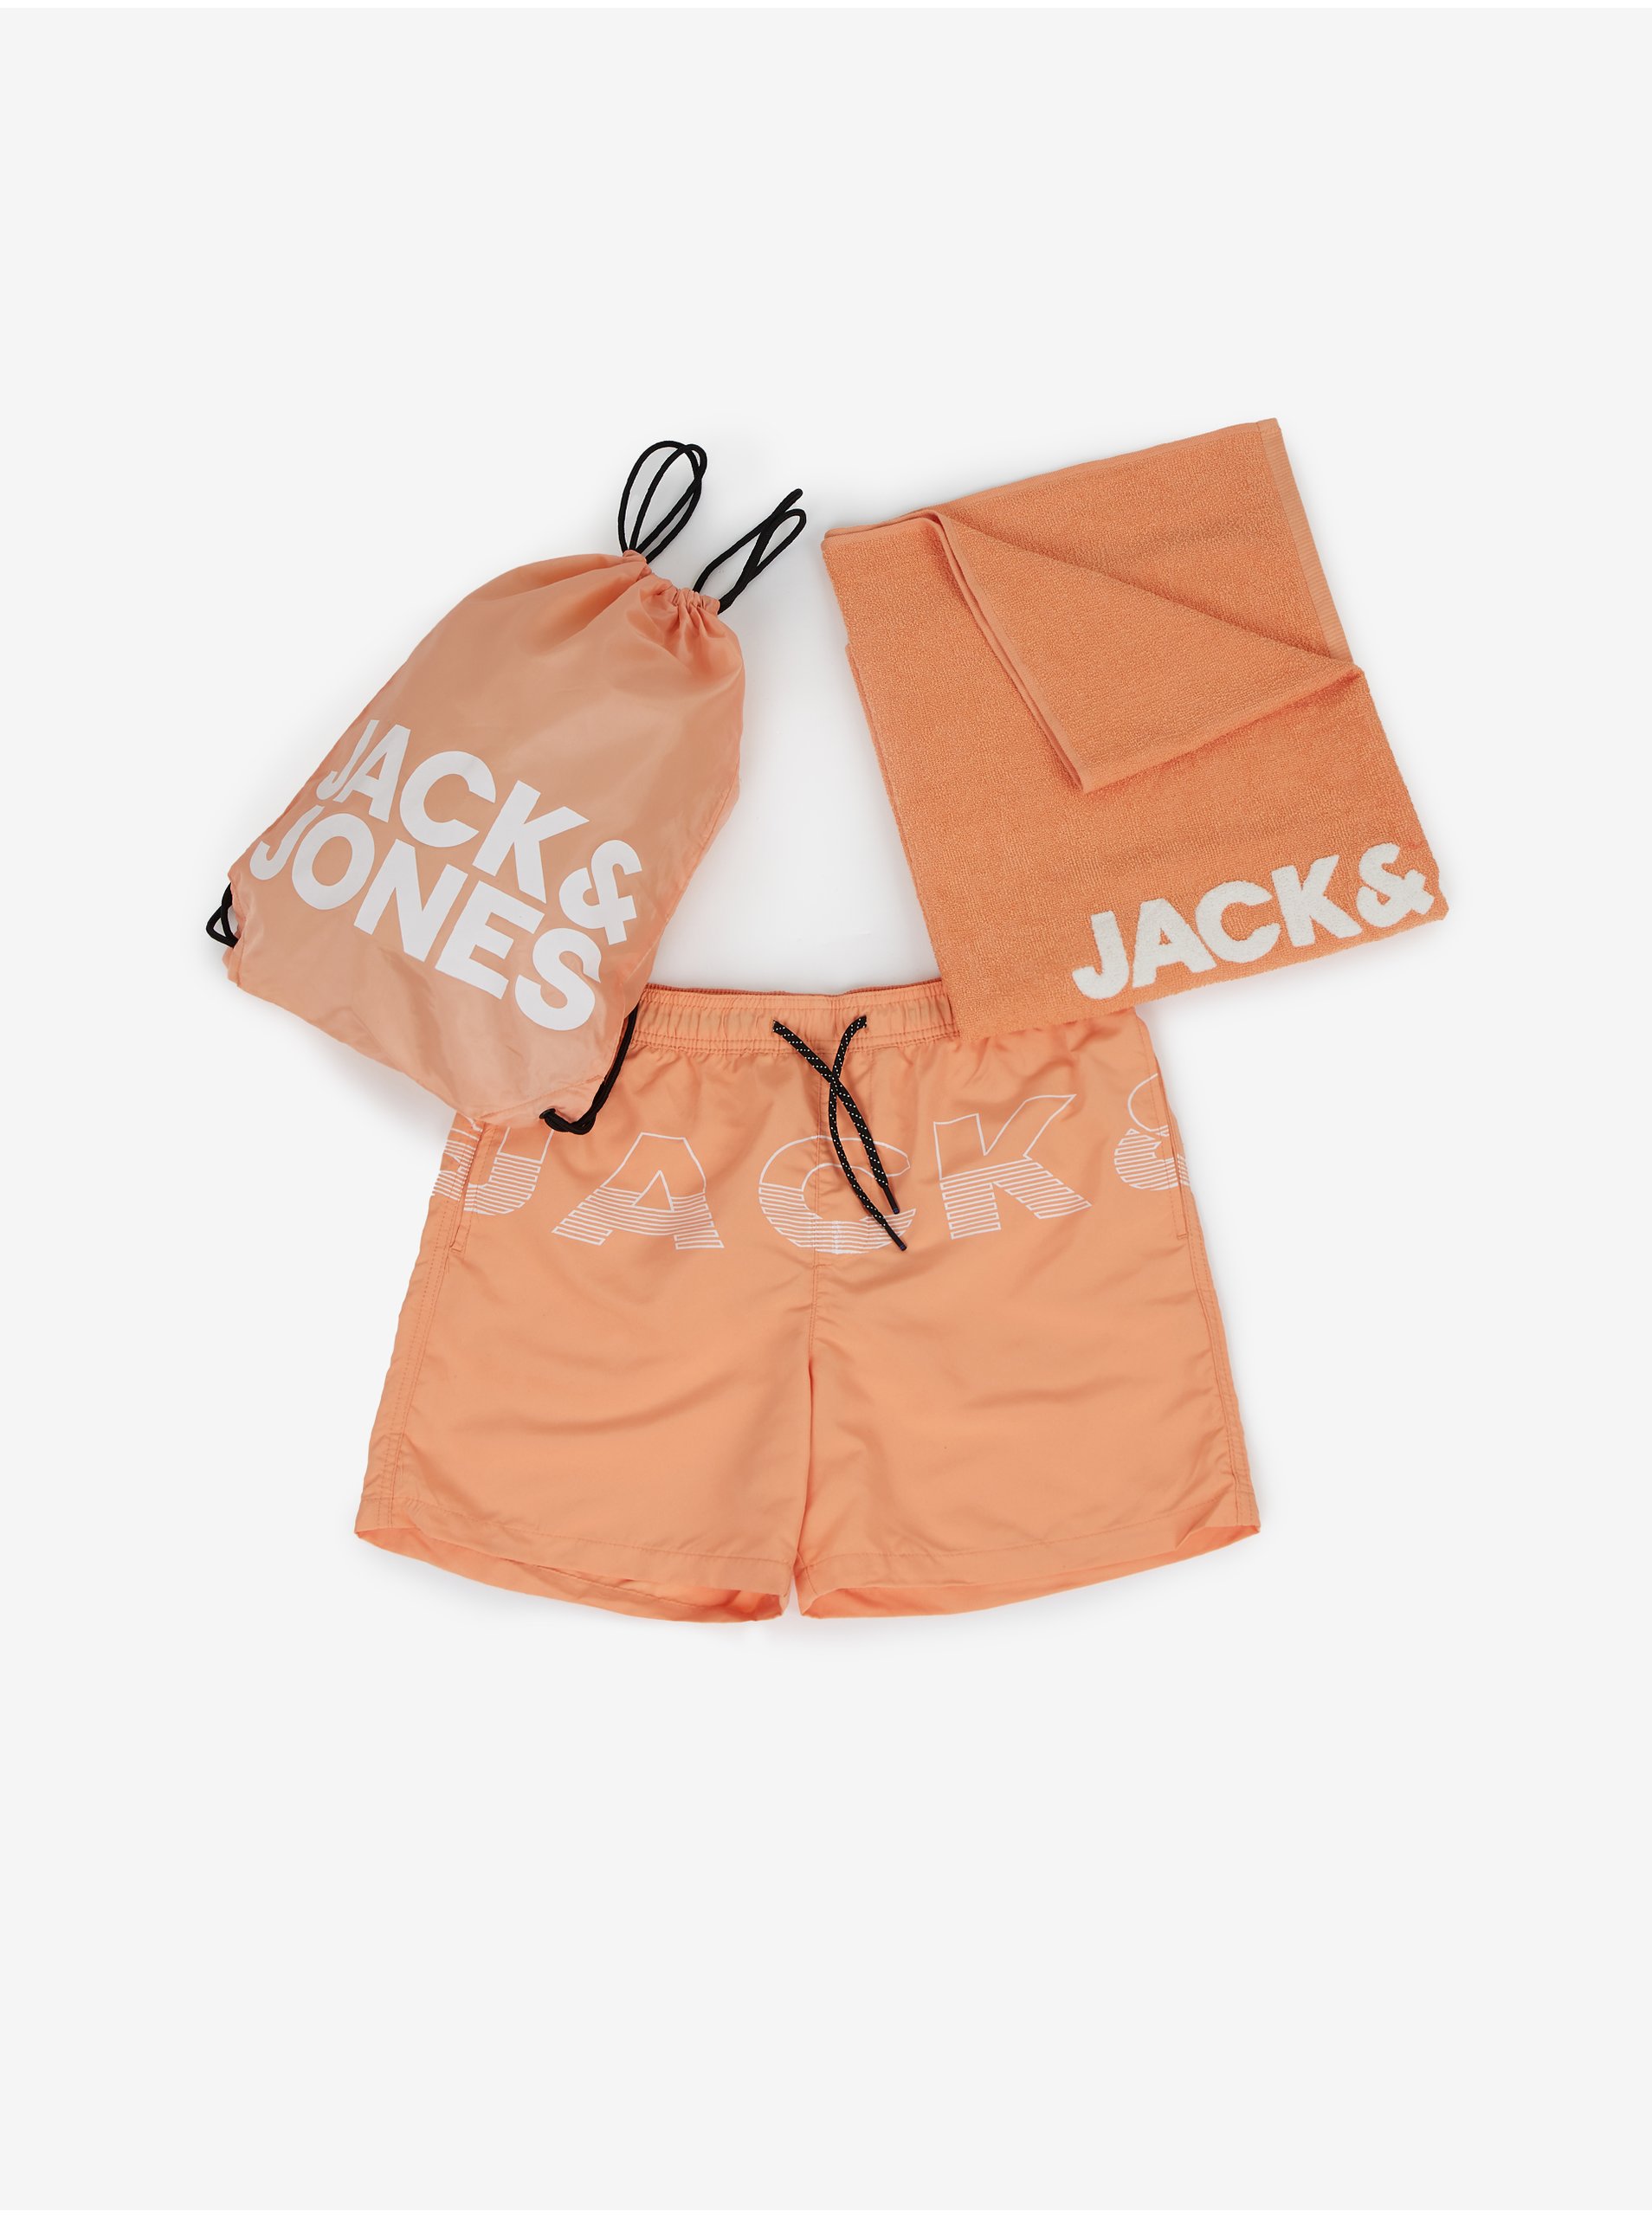 E-shop Sada pánských plavek, ručníku a vaku v oranžové barvě Jack & Jones Summer Beach